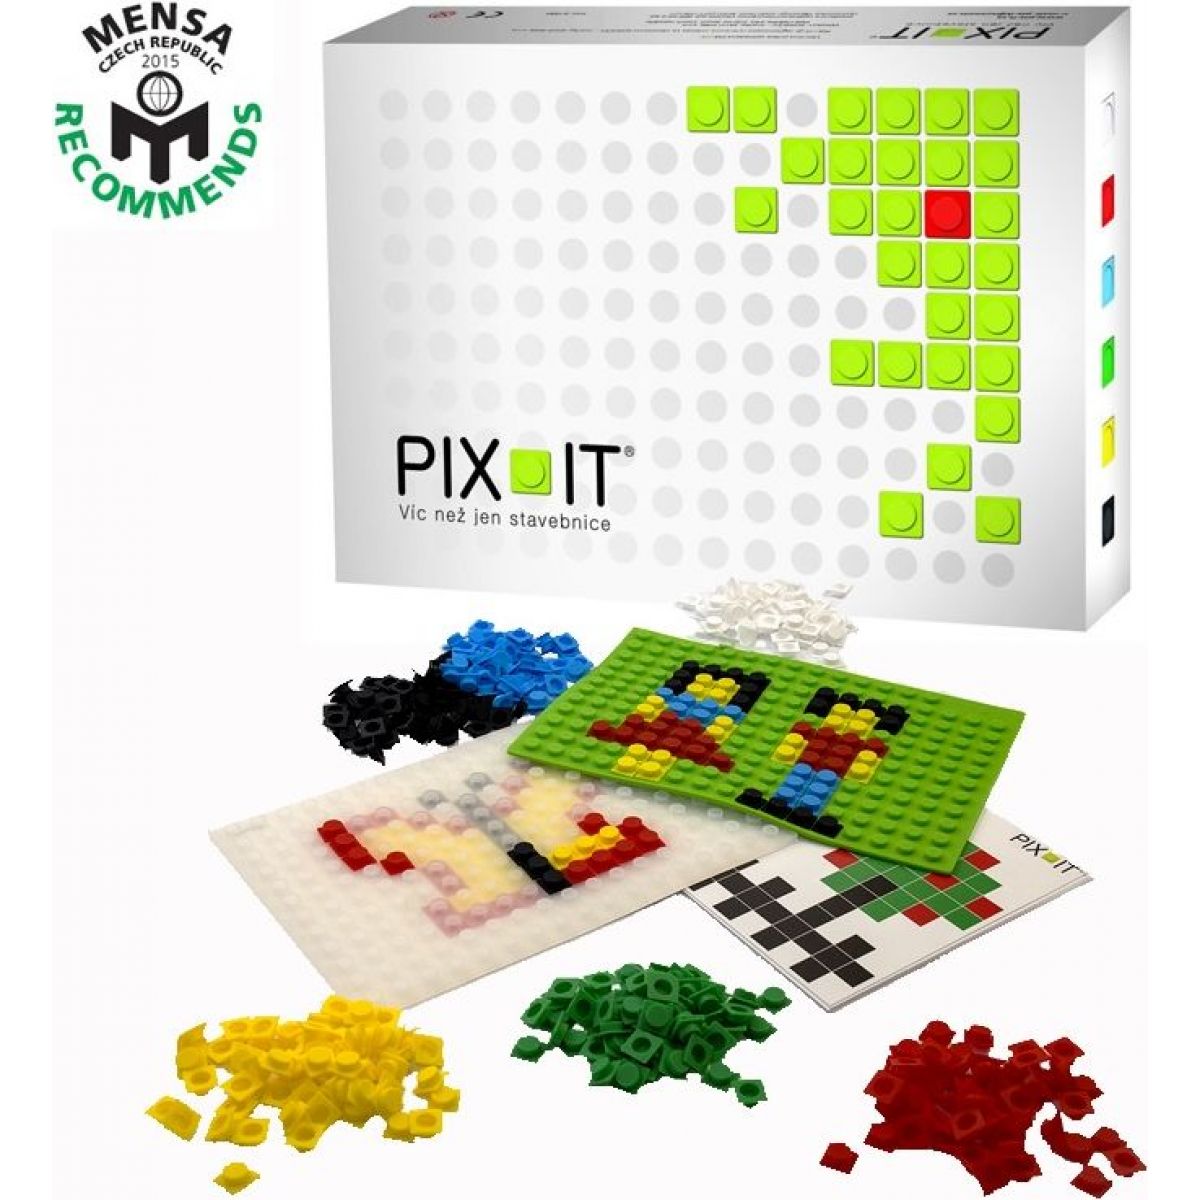 PIX-IT Stavebnice Premium